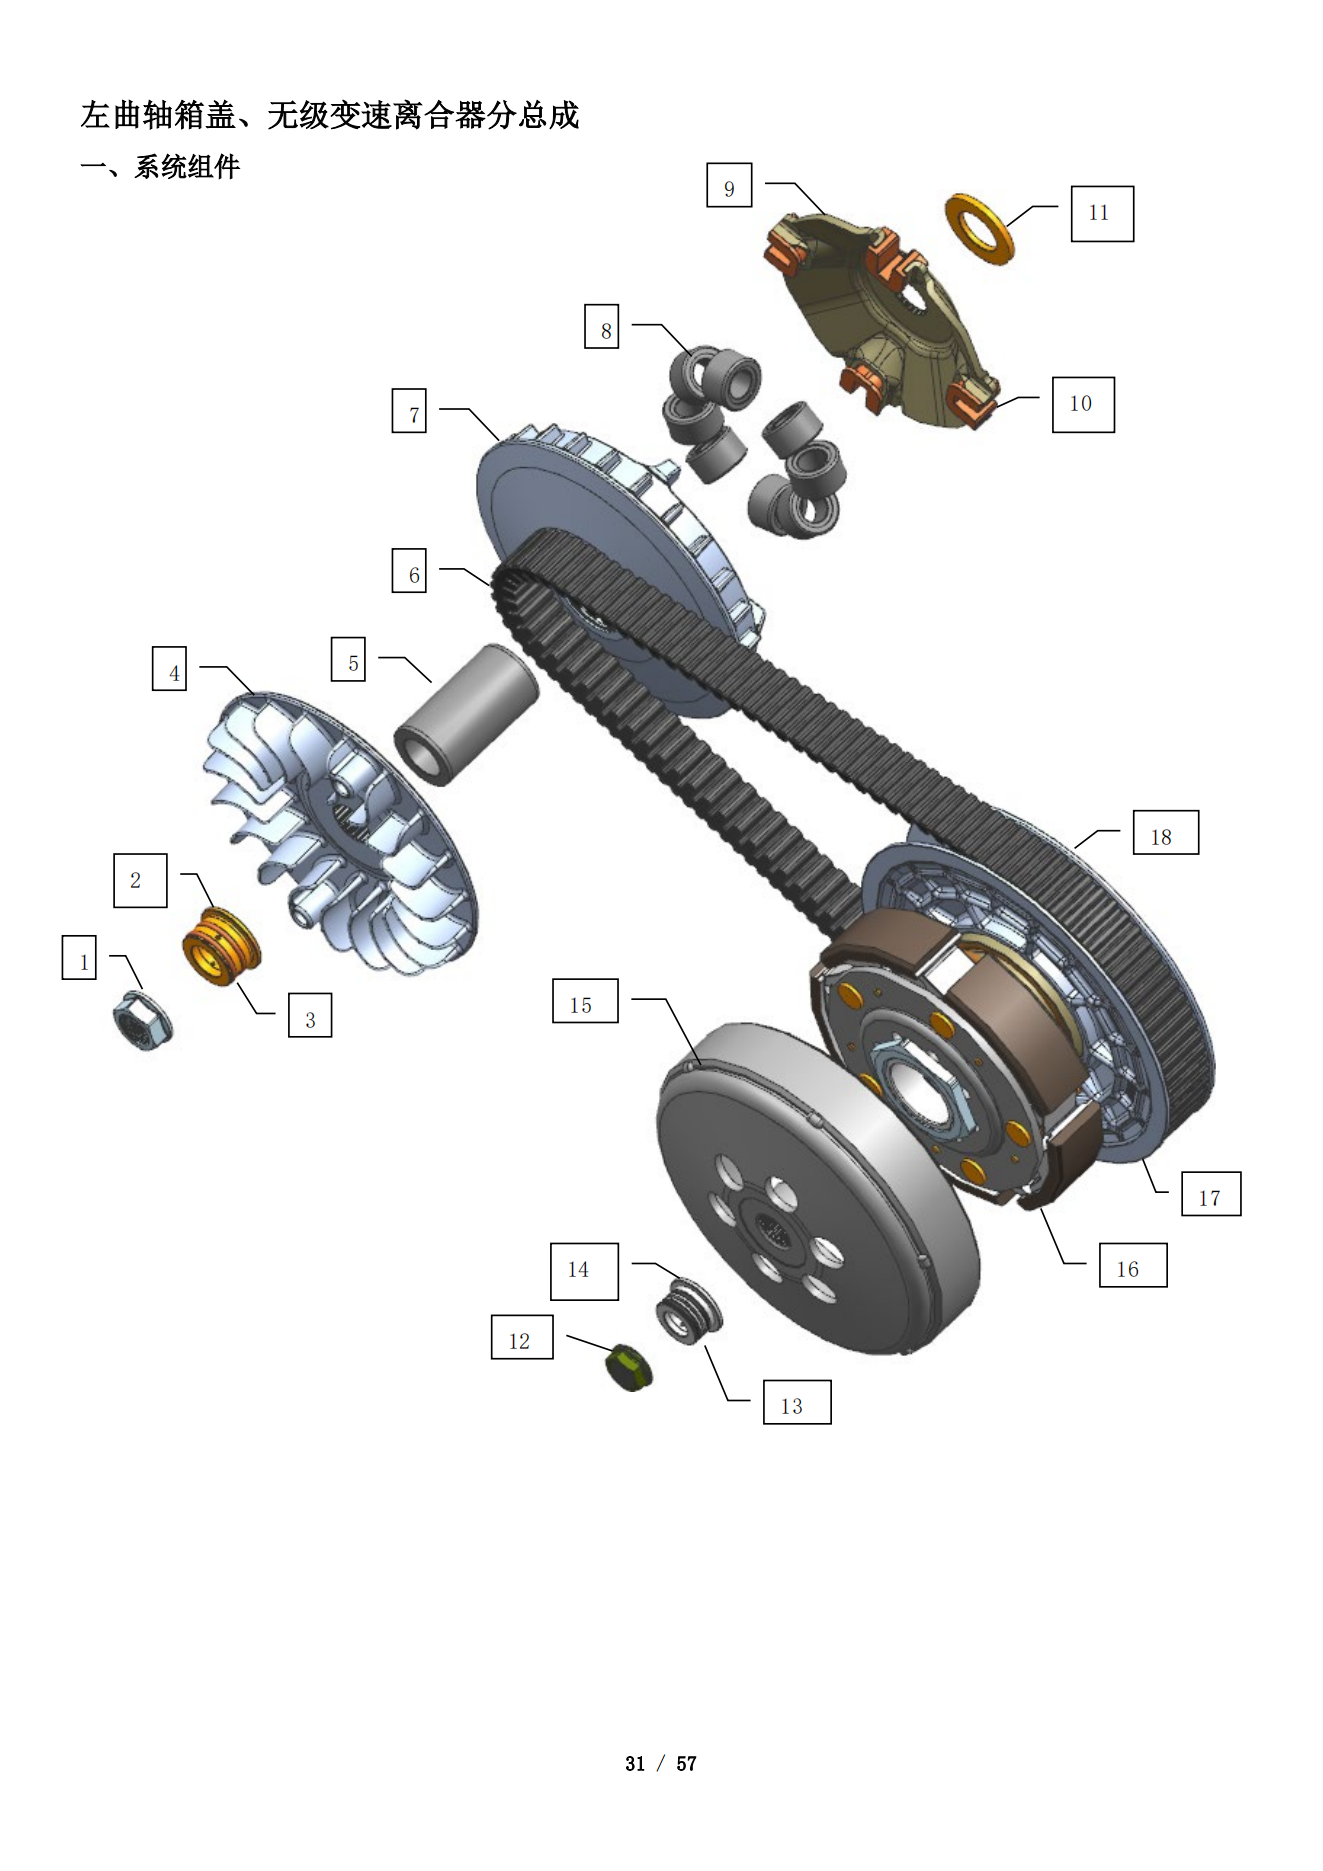 升仕ZT1P77MP发动机维修手册适用于350M 350D 350E 350排量的所有踏板车发动机插图4